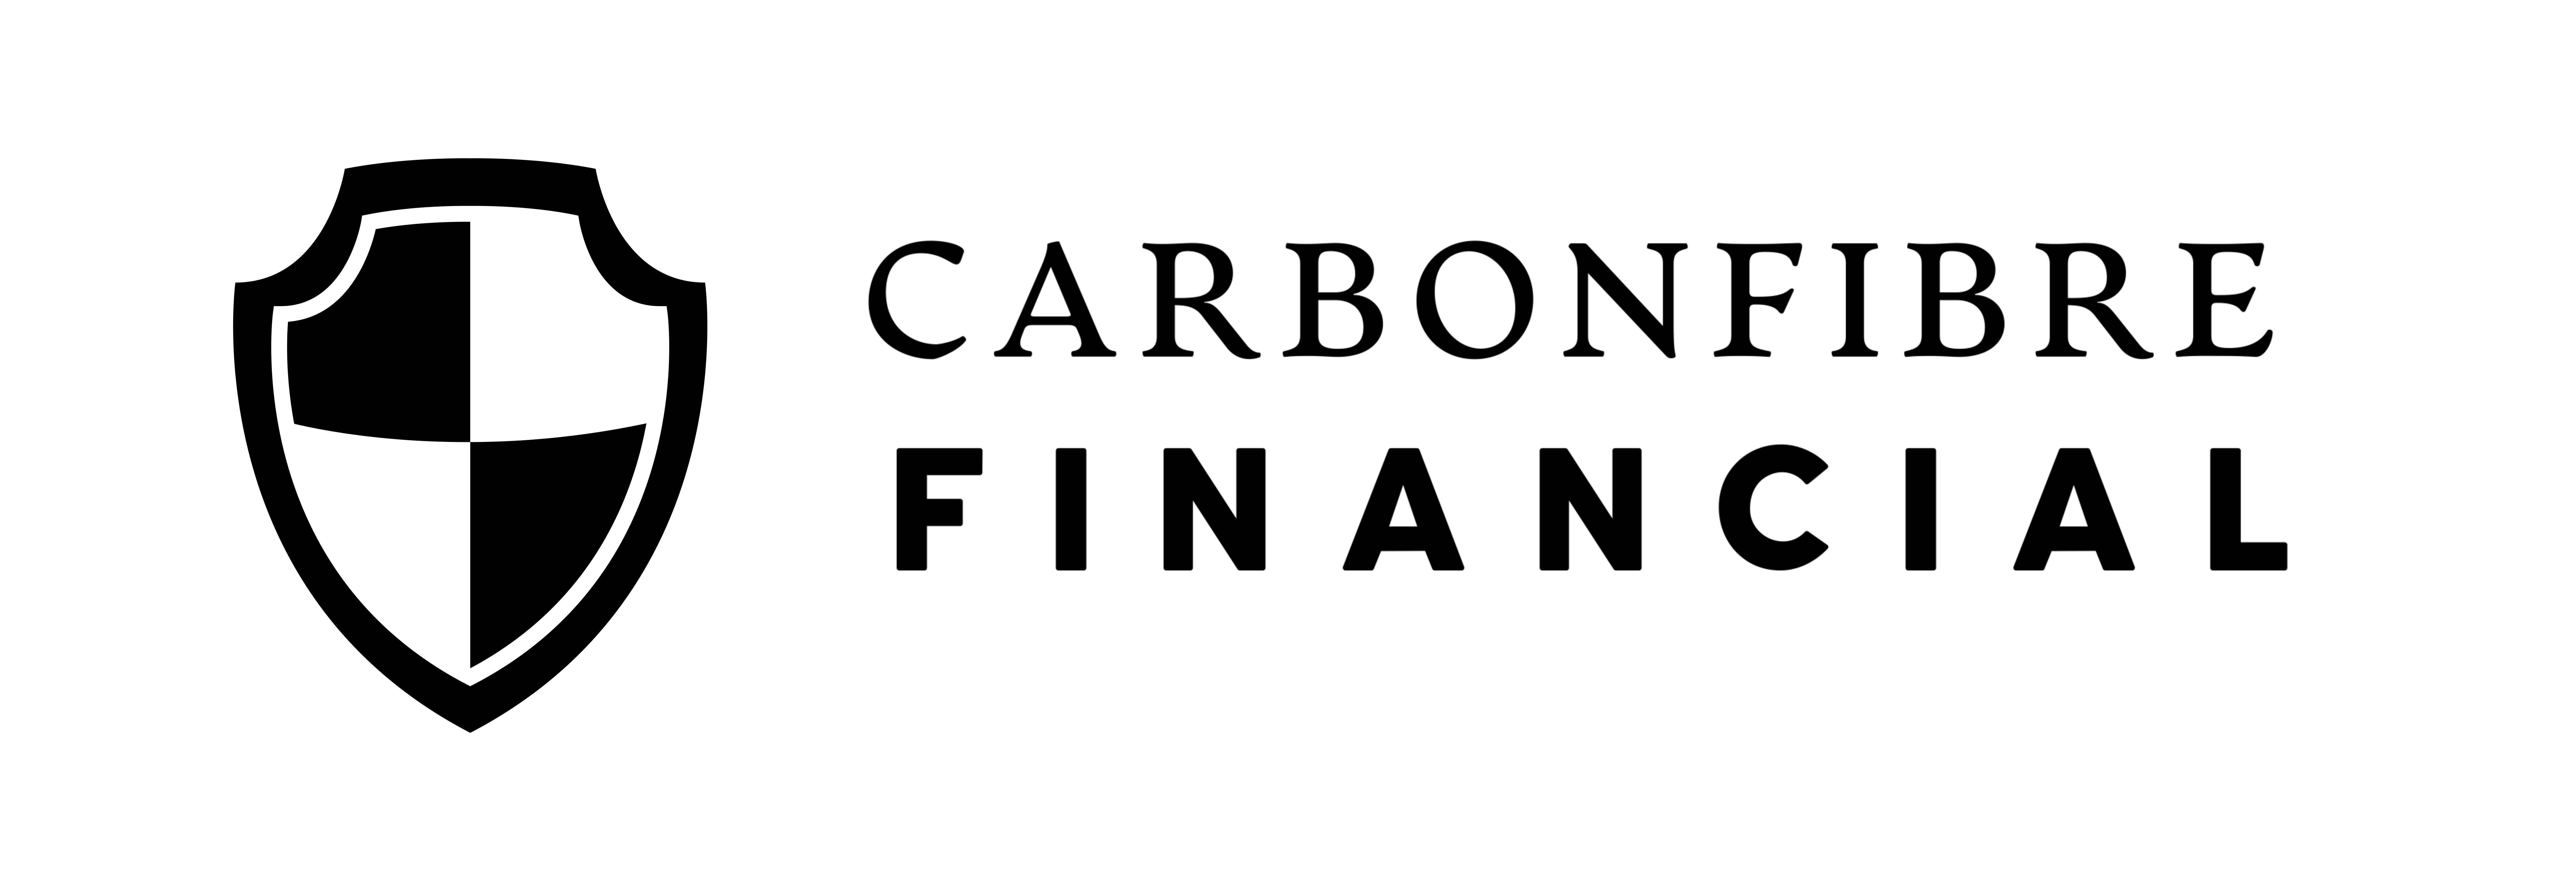 CarbonFibre Financial